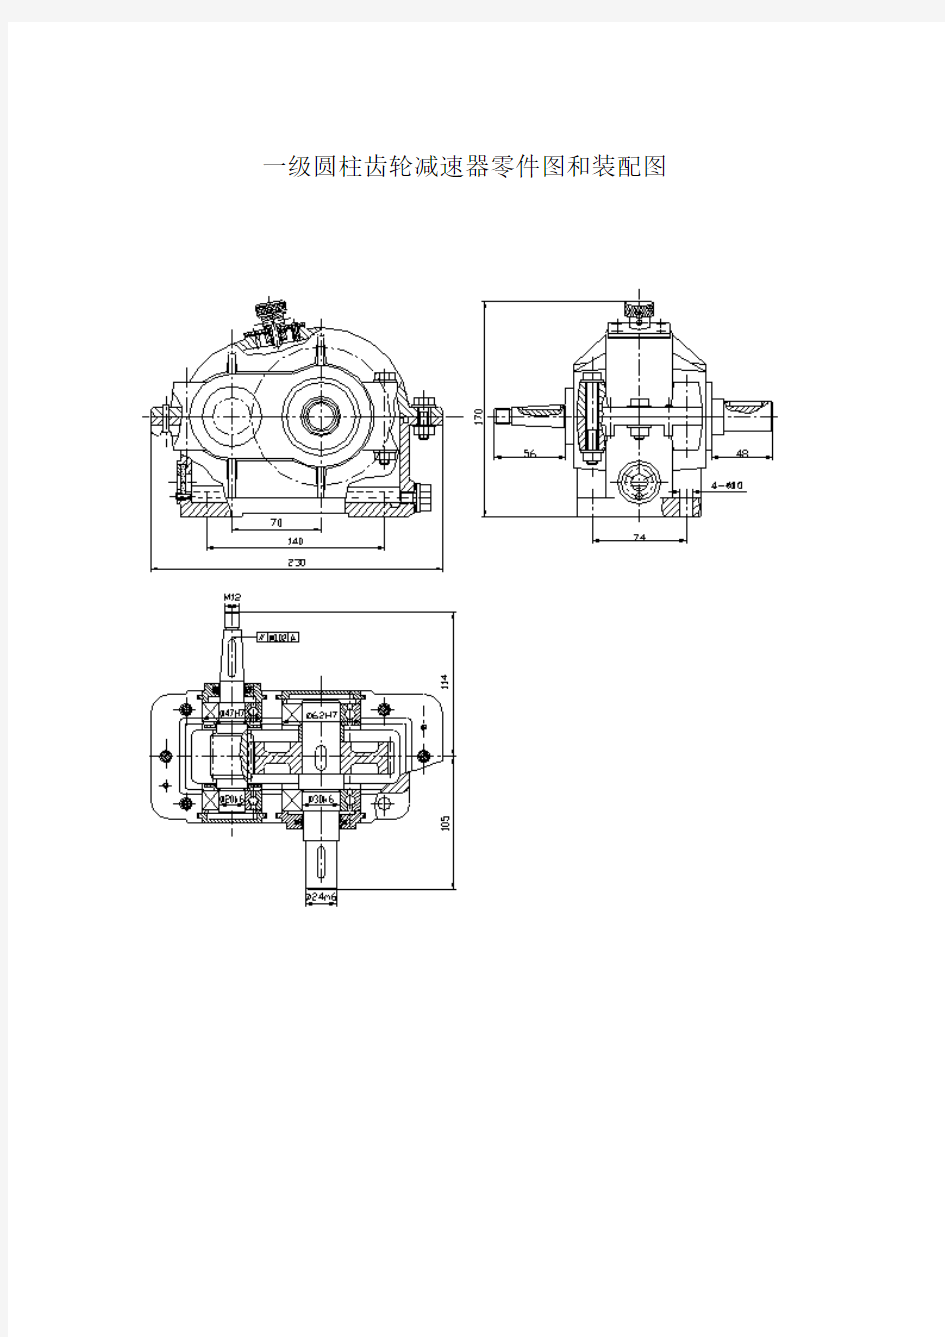 一级圆柱齿轮减速器零件图和装配图